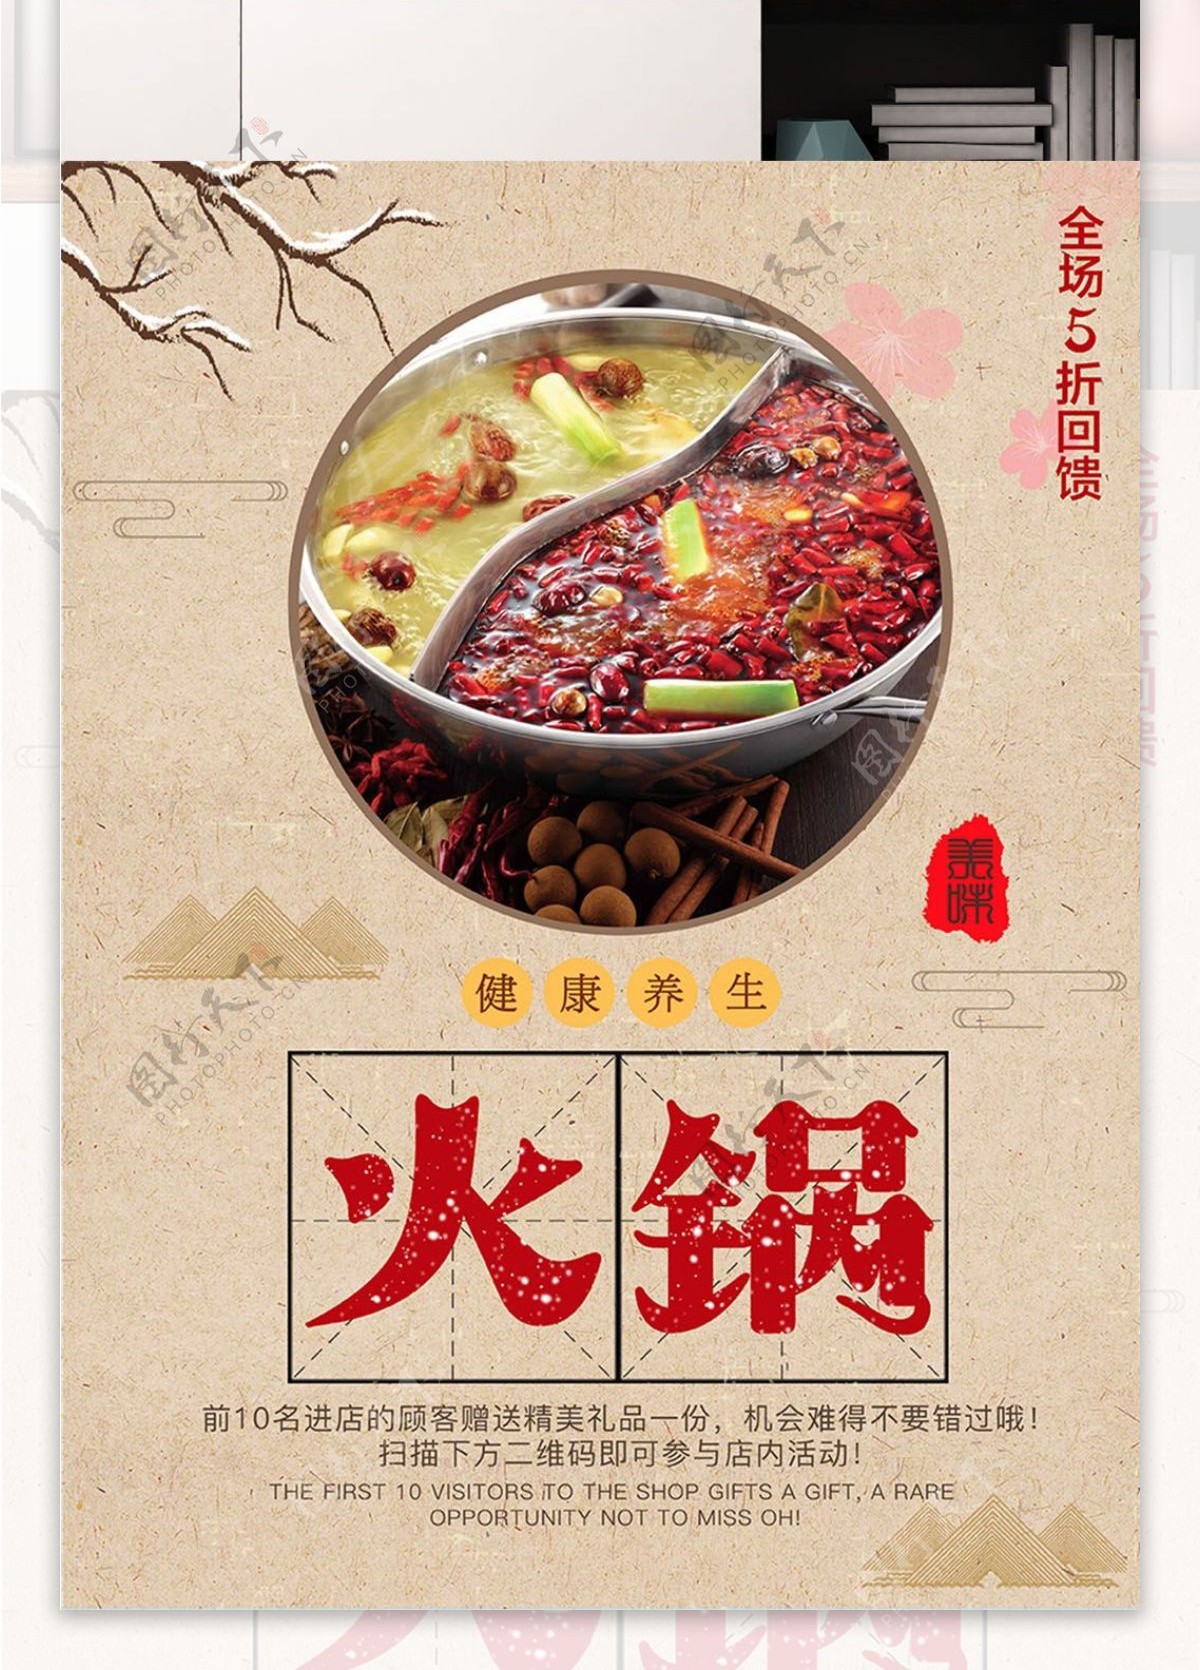 黄色背景简约中国风美味火锅宣传海报